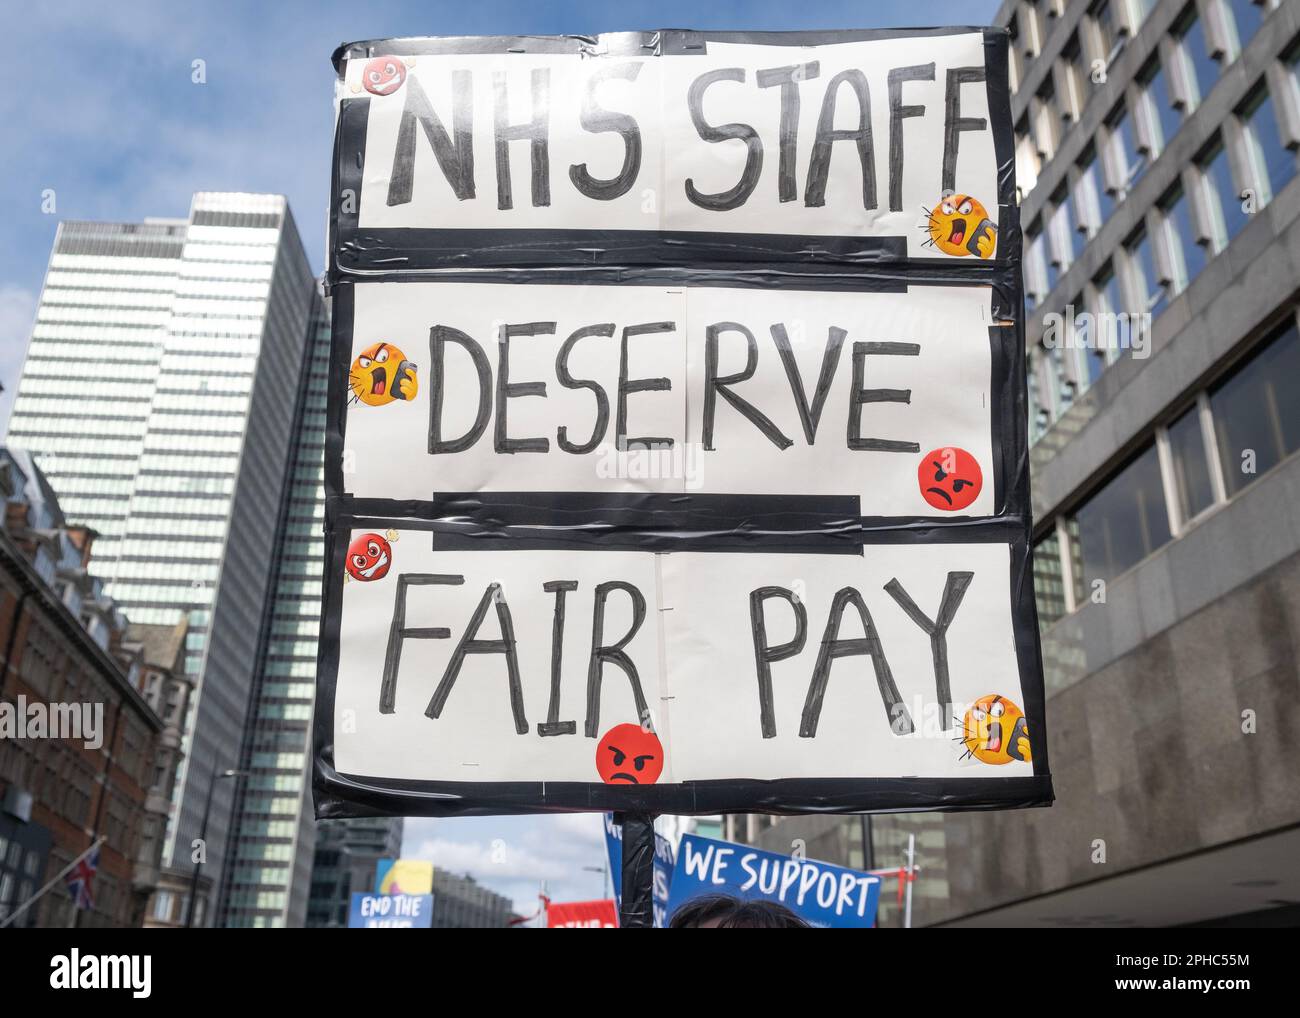 Des signes de protestation à la SOS NHS National Demo à Londres, en faveur de travailleurs de santé en grève et en protestation de la crise provoquée par des coupures de gouvernement. Banque D'Images